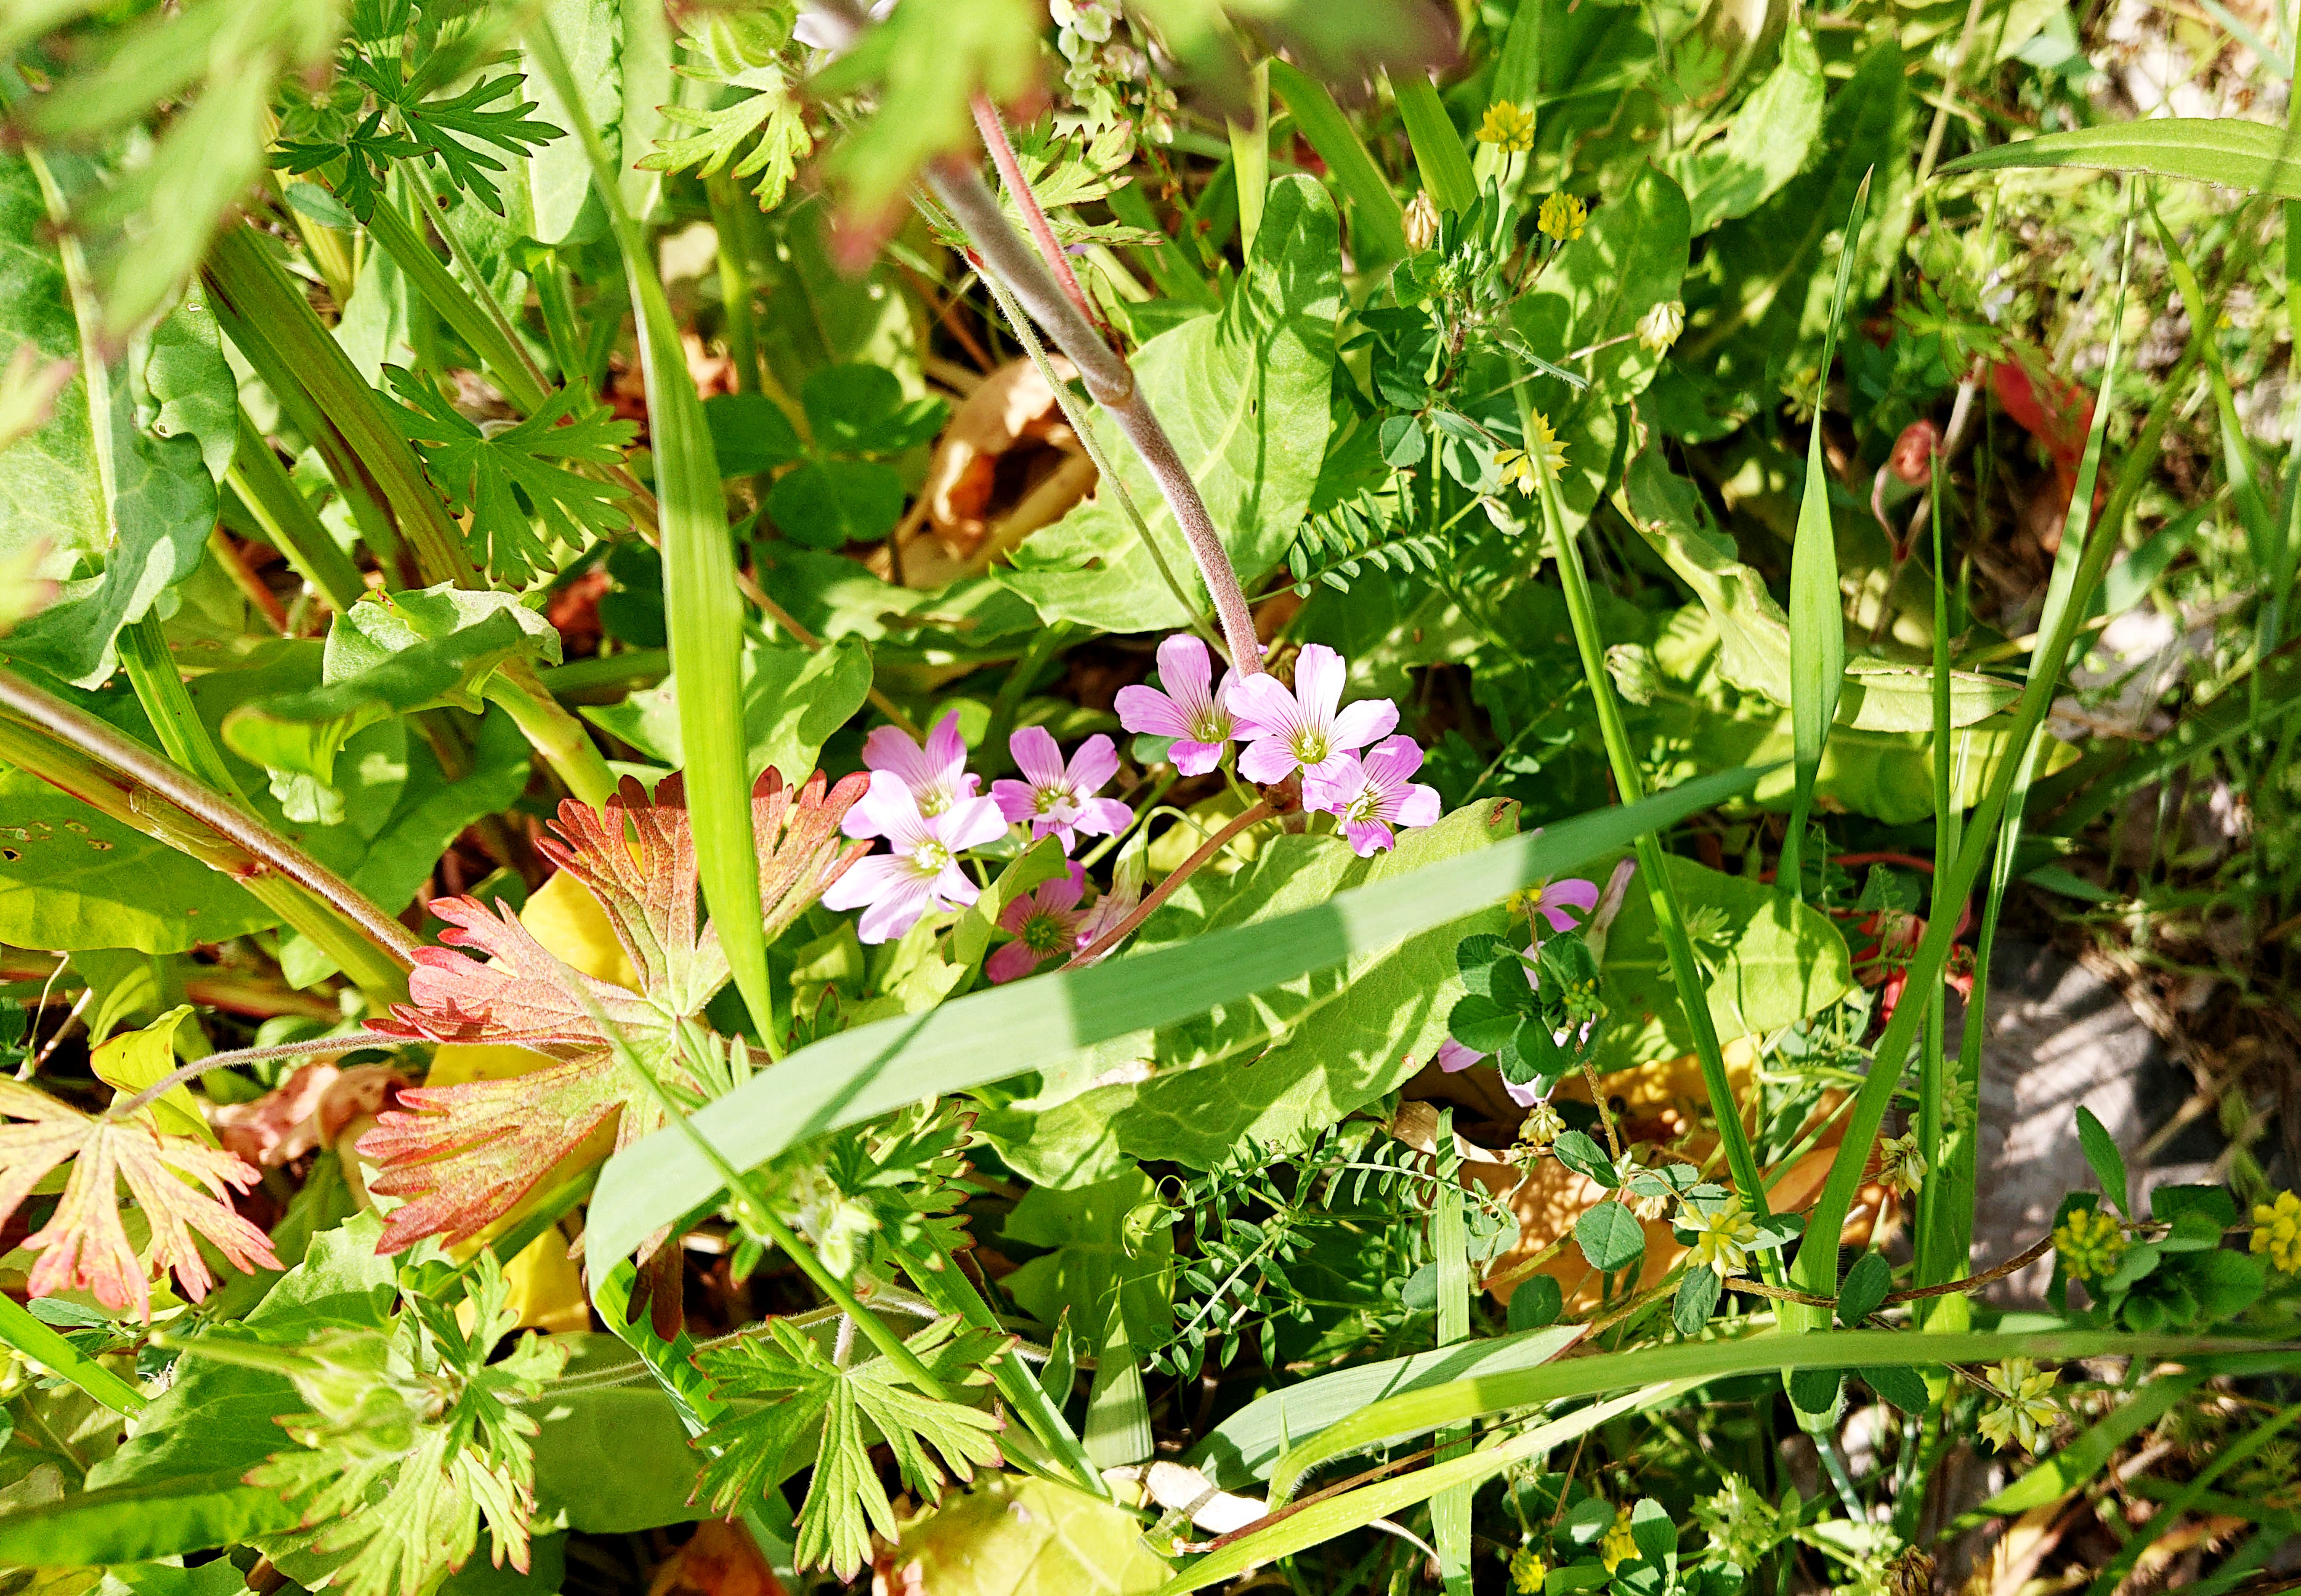 ご近所の草花 ハートの葉っぱやピンク色の花 カワイイお花は何だろう 広島市植物公園の久保さんに聞いてみた まるごと安佐南 安佐北ブログ